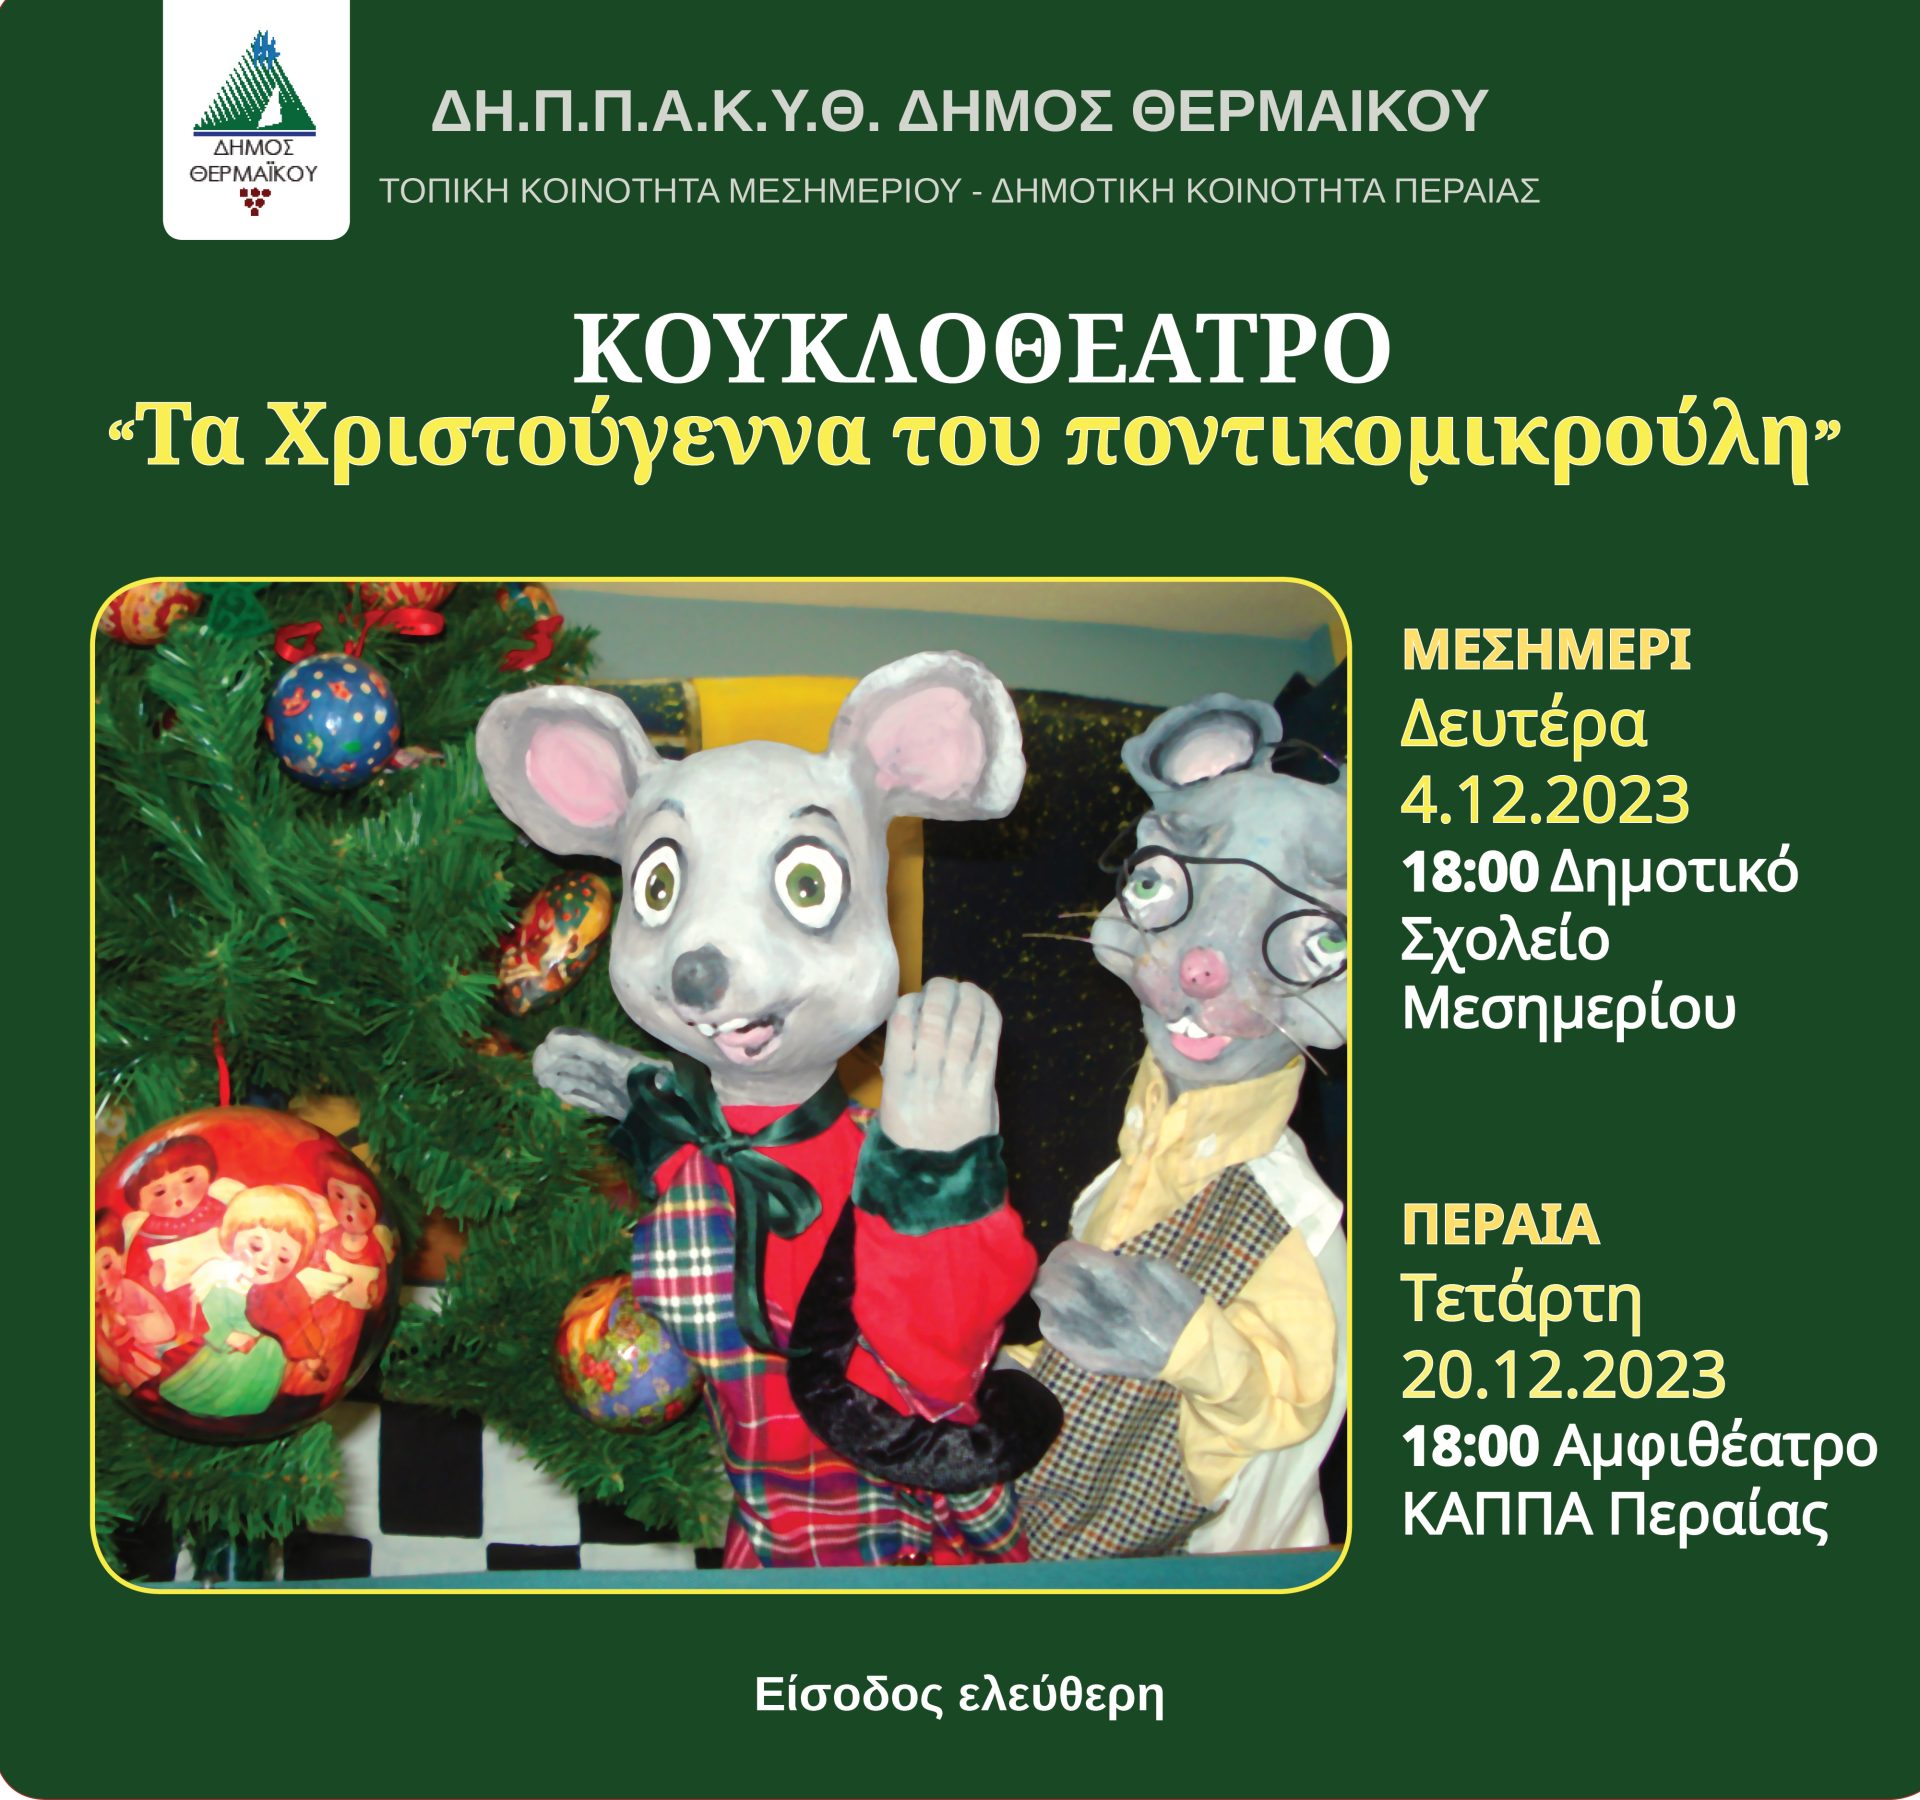 ΣΗΜΕΡΑ-Κουκλοθέατρο στο Μεσημέρι: Τα Χριστούγεννα του Ποντικομικρούλη (18:00)